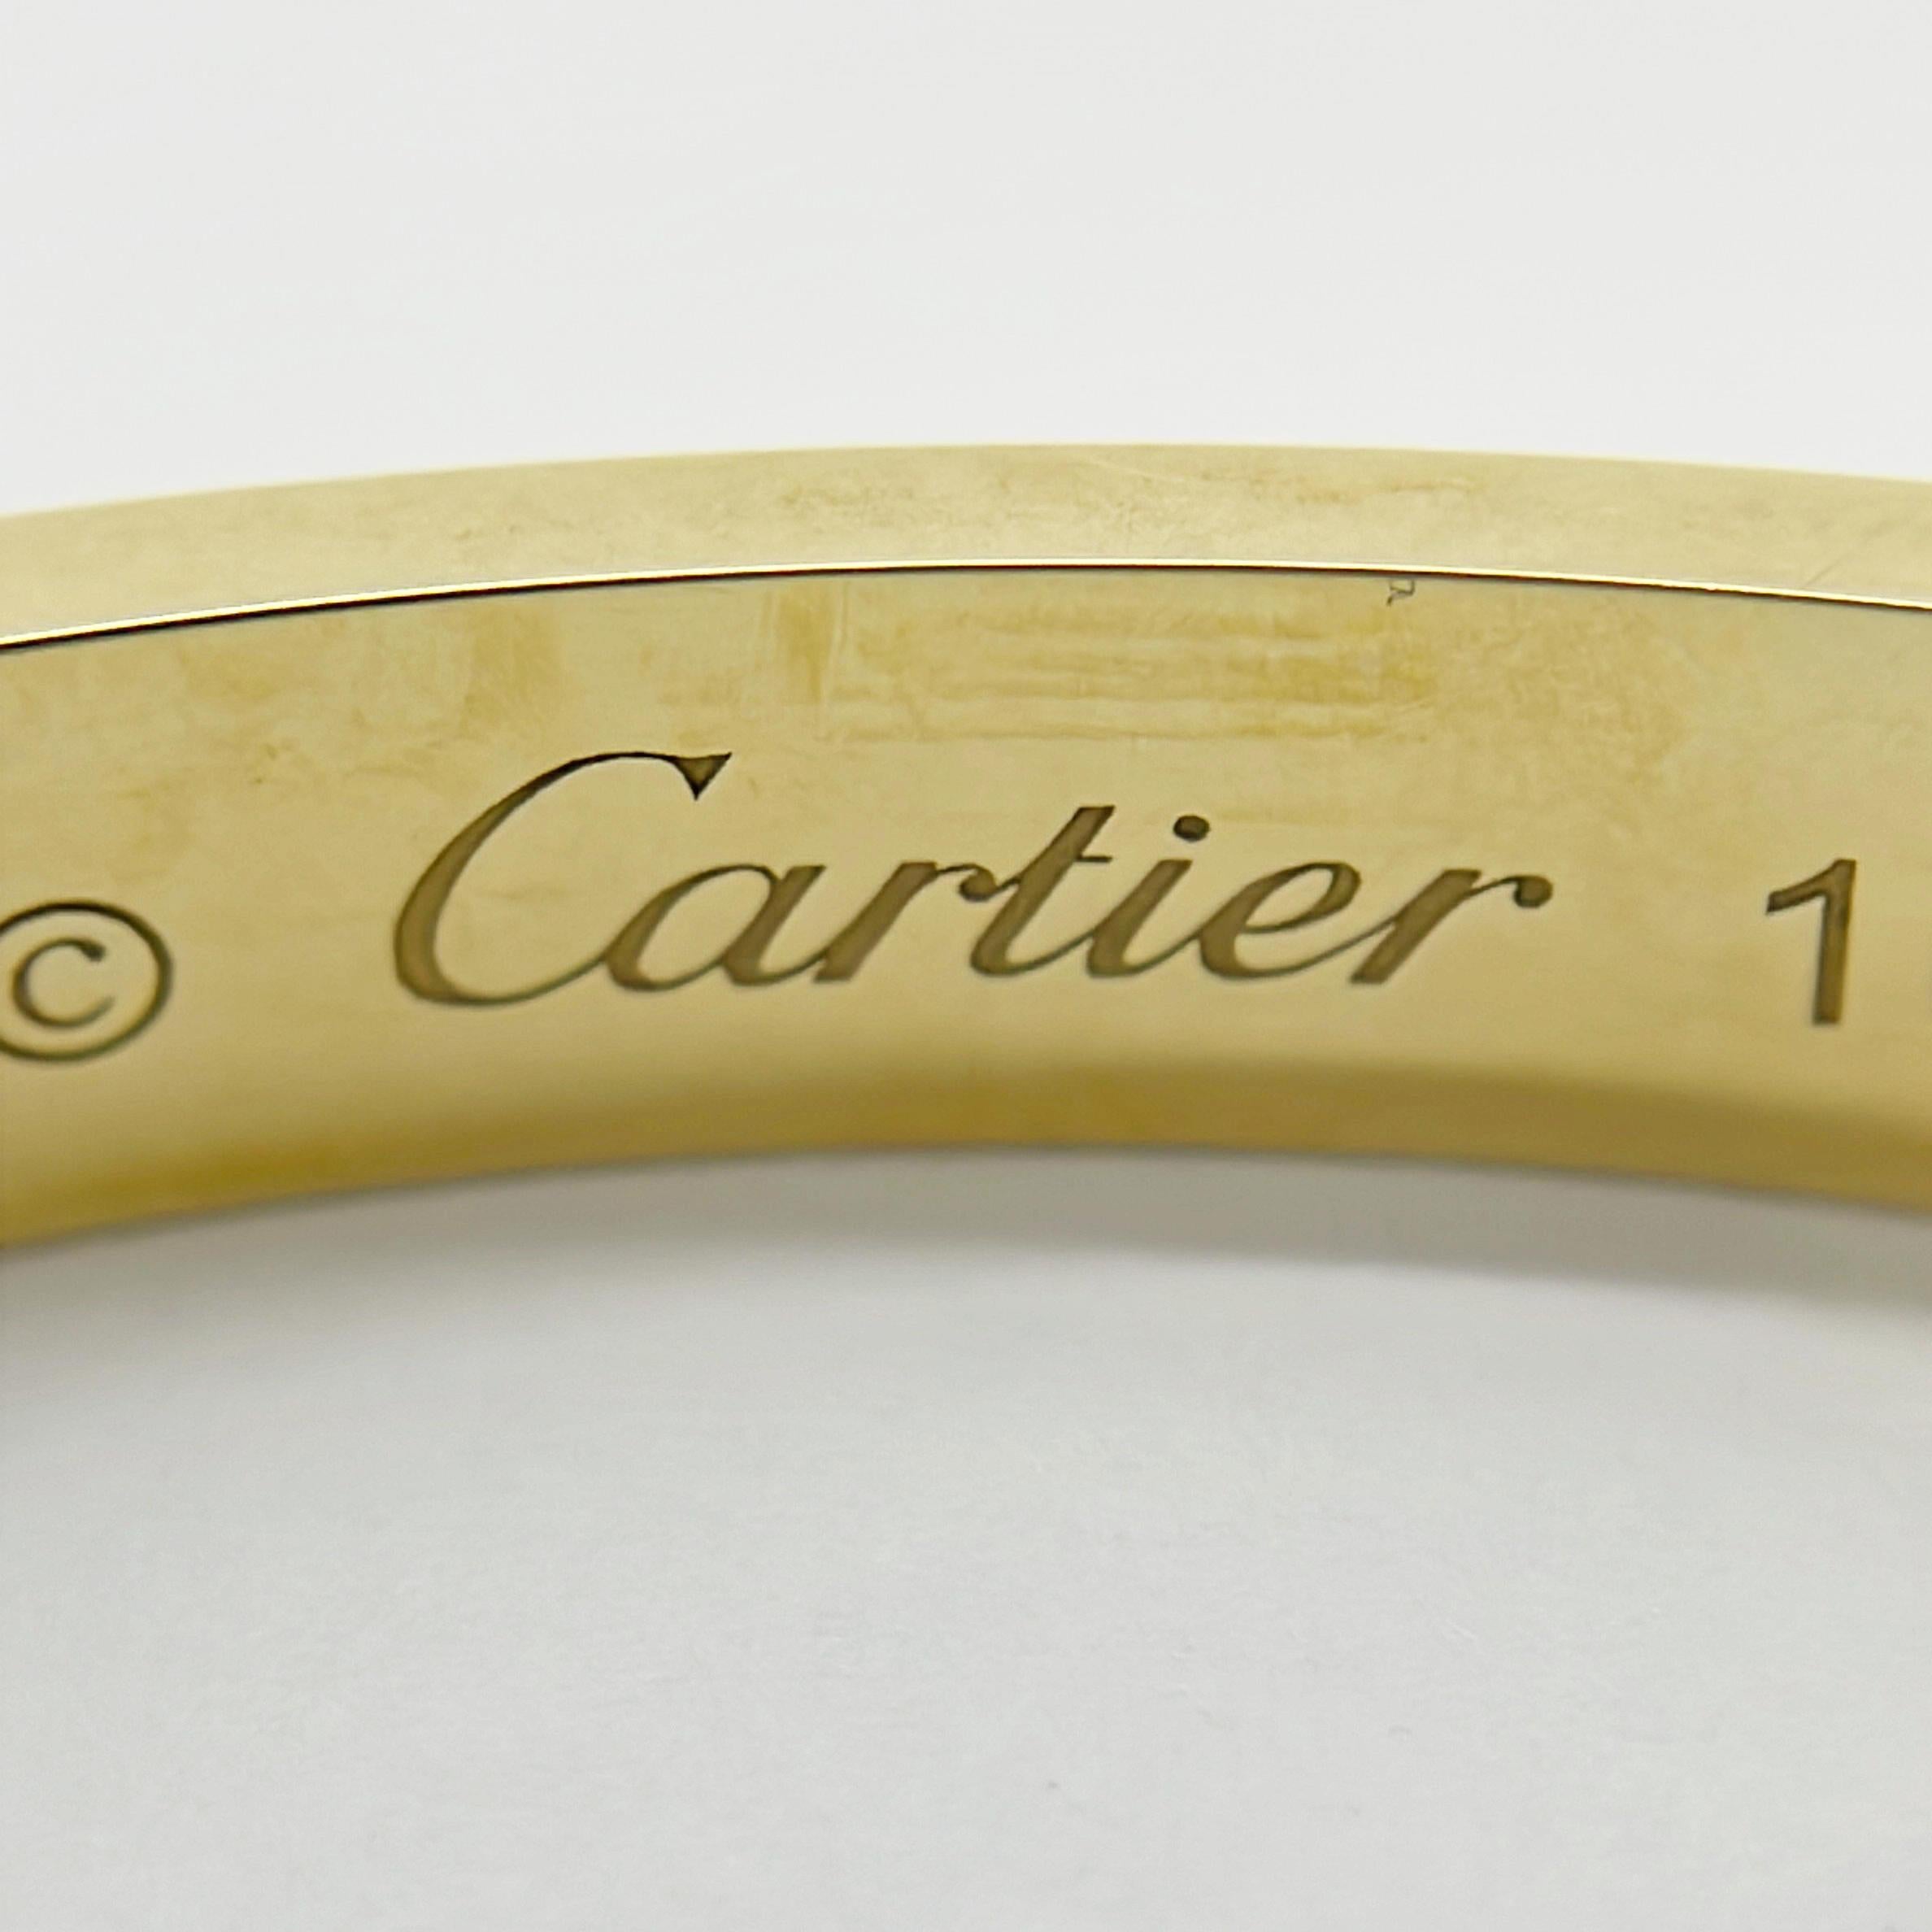  Cartier Love Open Bangle Bracalet - 750YG - AOQ053 - Size 16 - 22.0g  2